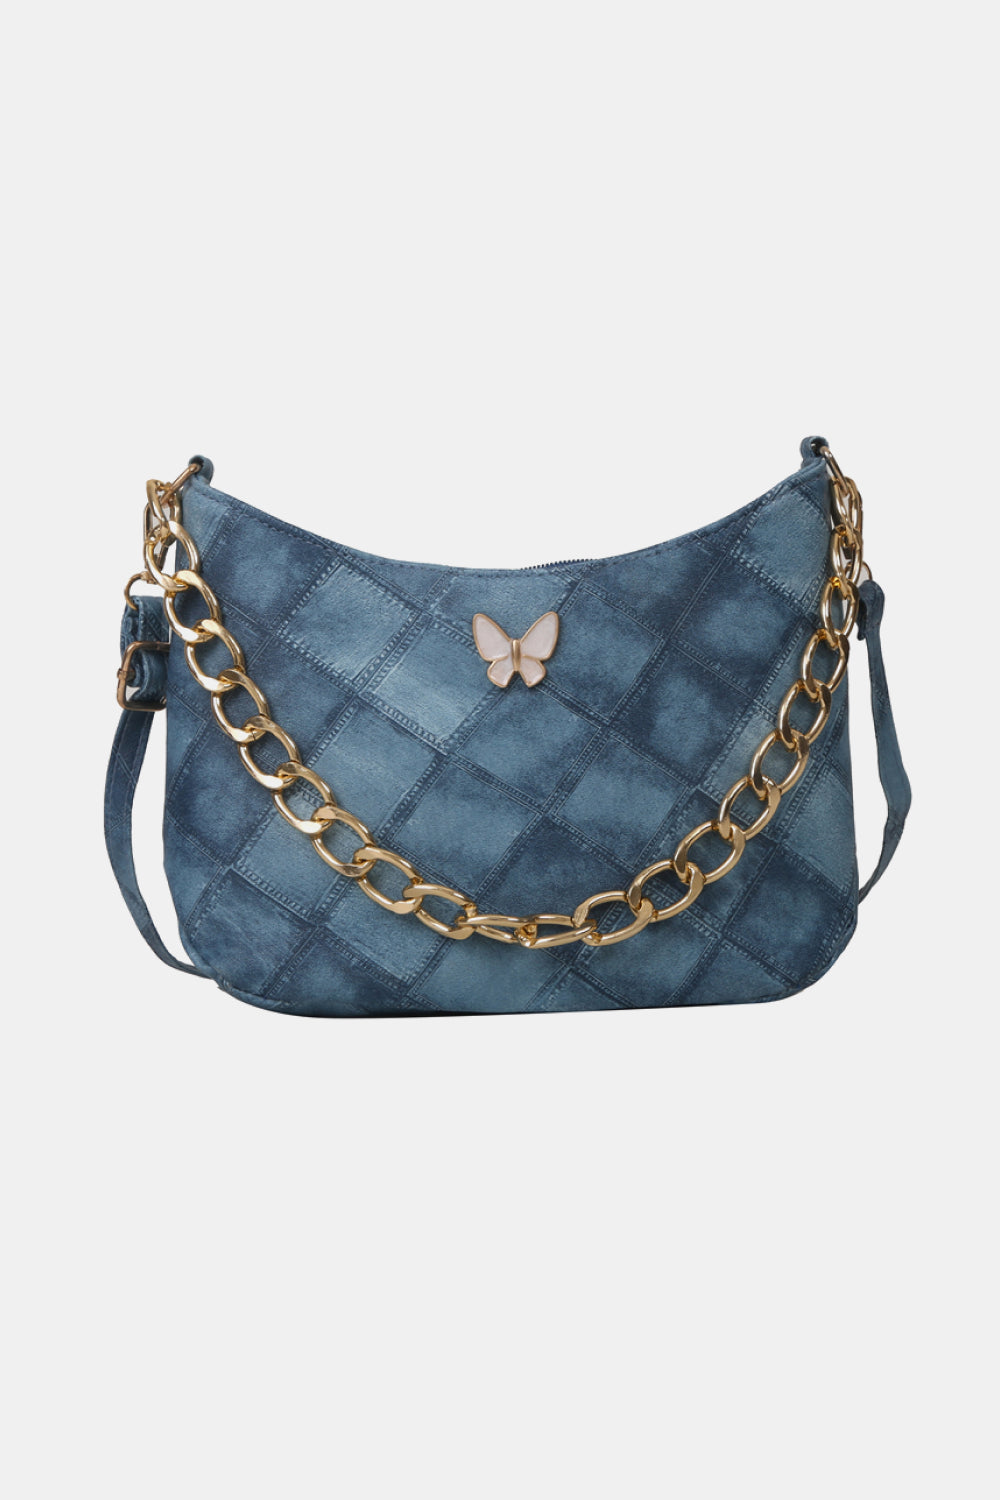 Chanel Gabrielle Small Denim Blue Crossbody Bag!